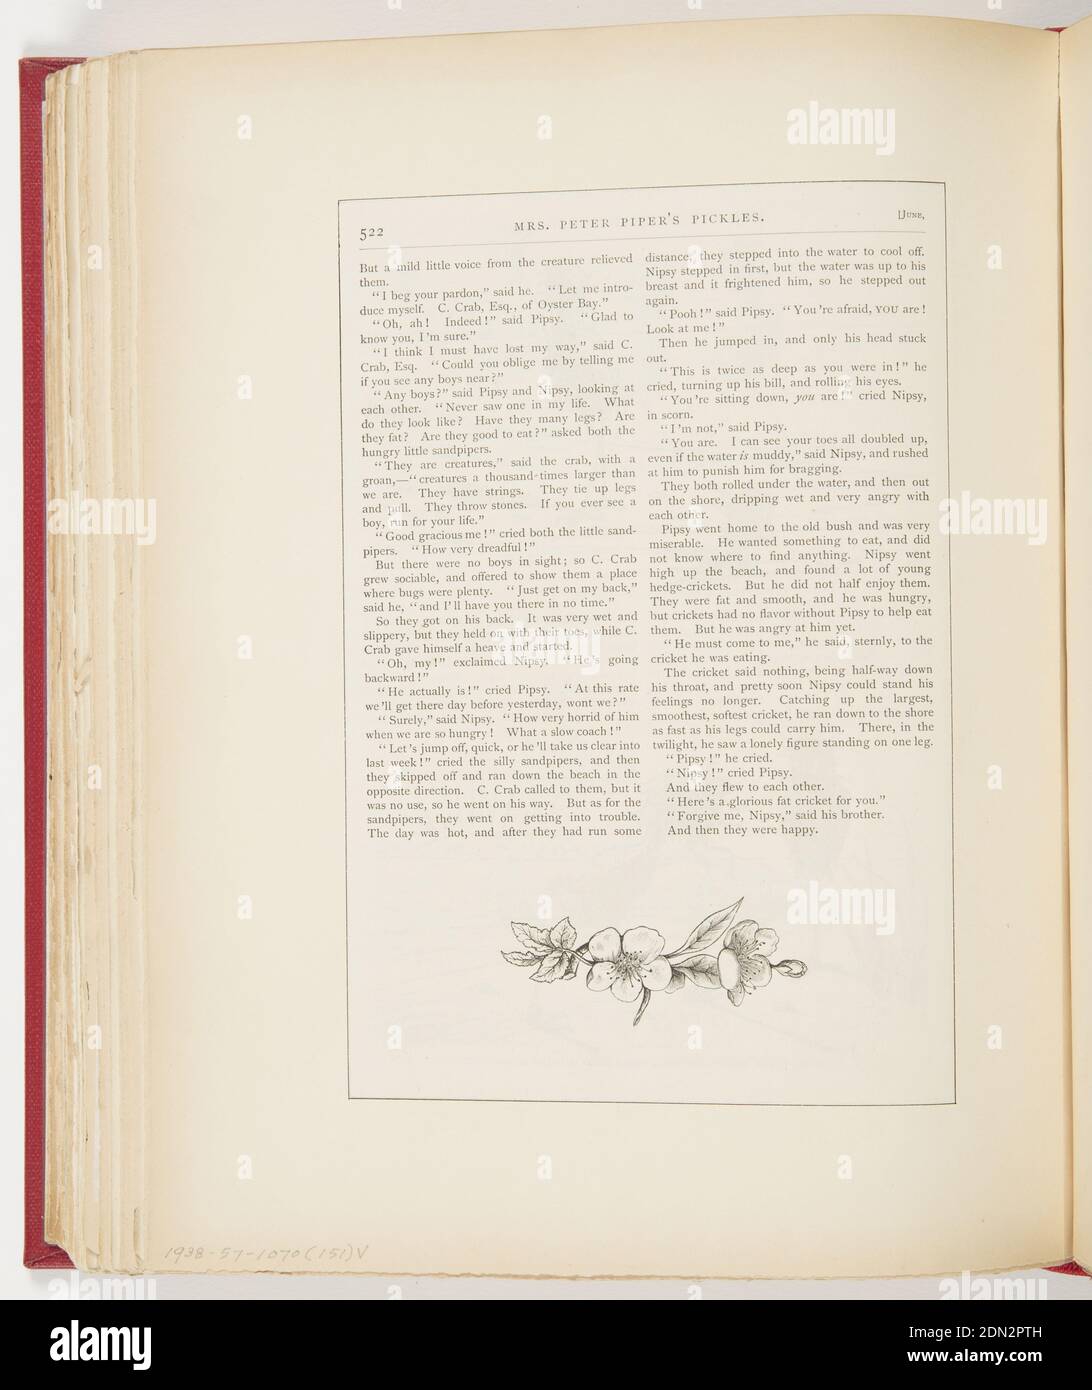 Mrs. Peter Piper's Pickle, gedruckt in schwarzer Tinte auf Papier, Kurzgeschichte auf zwei Krähen., USA, 1878, Ephemera, Ephemera, Ephemera Stockfoto